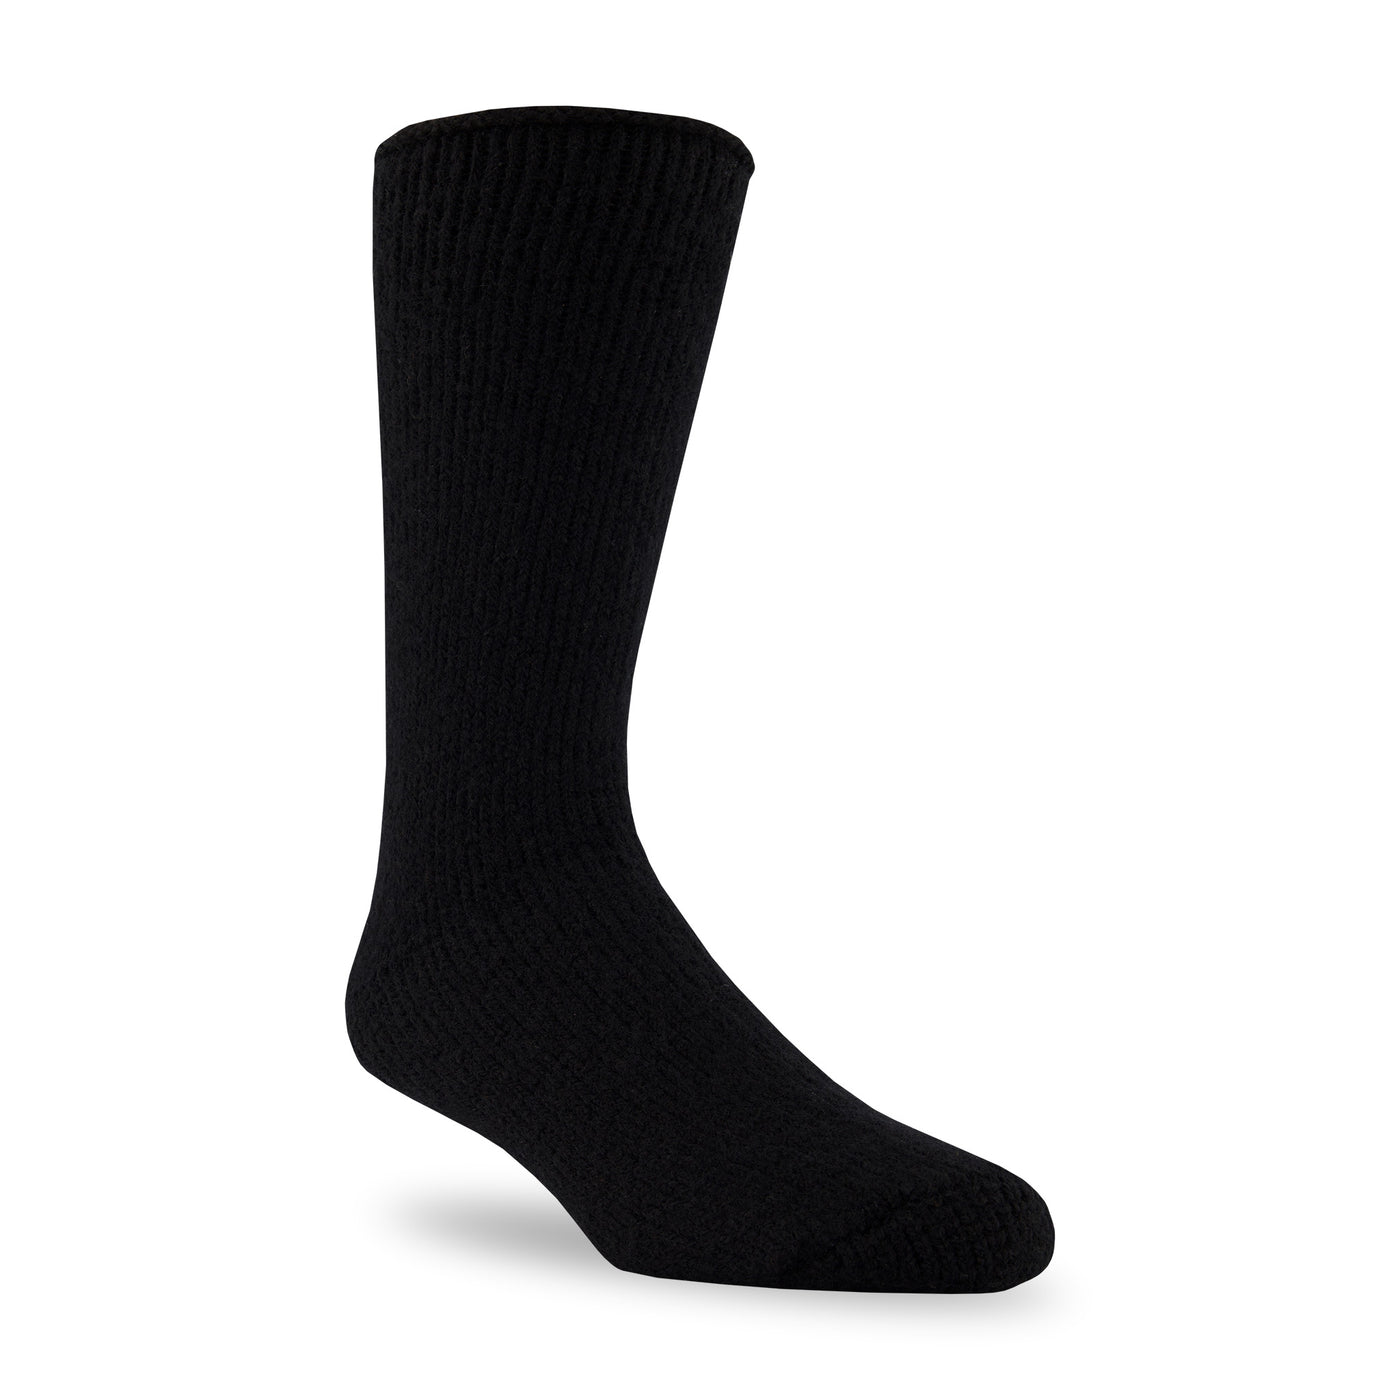 Black Thermal Socks